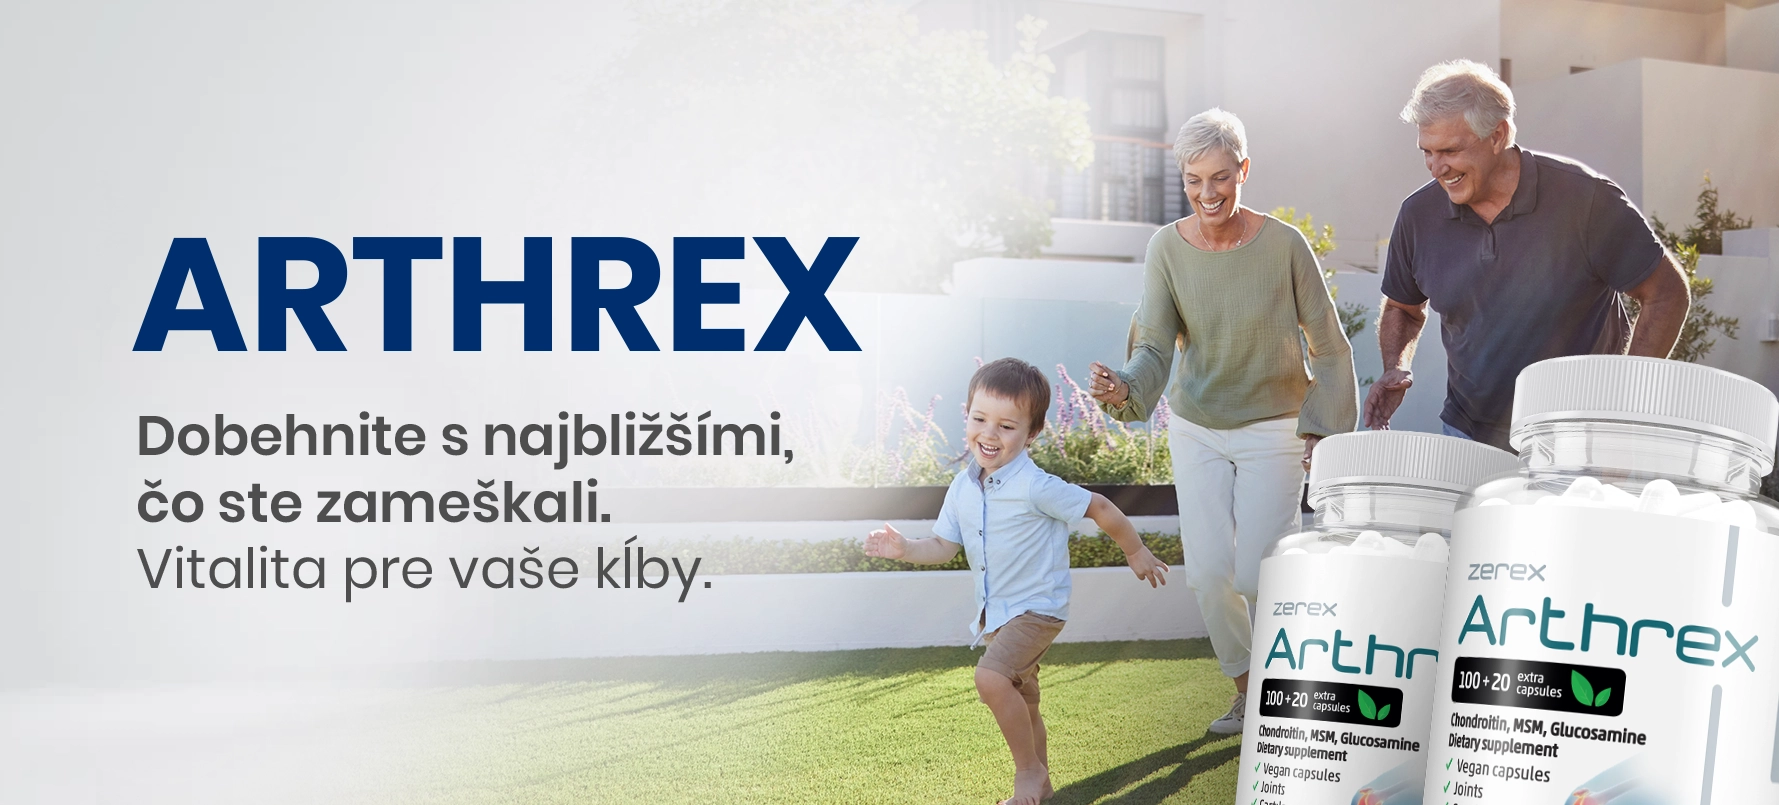 Zerex Arthrex kĺbová výživa 805 mg